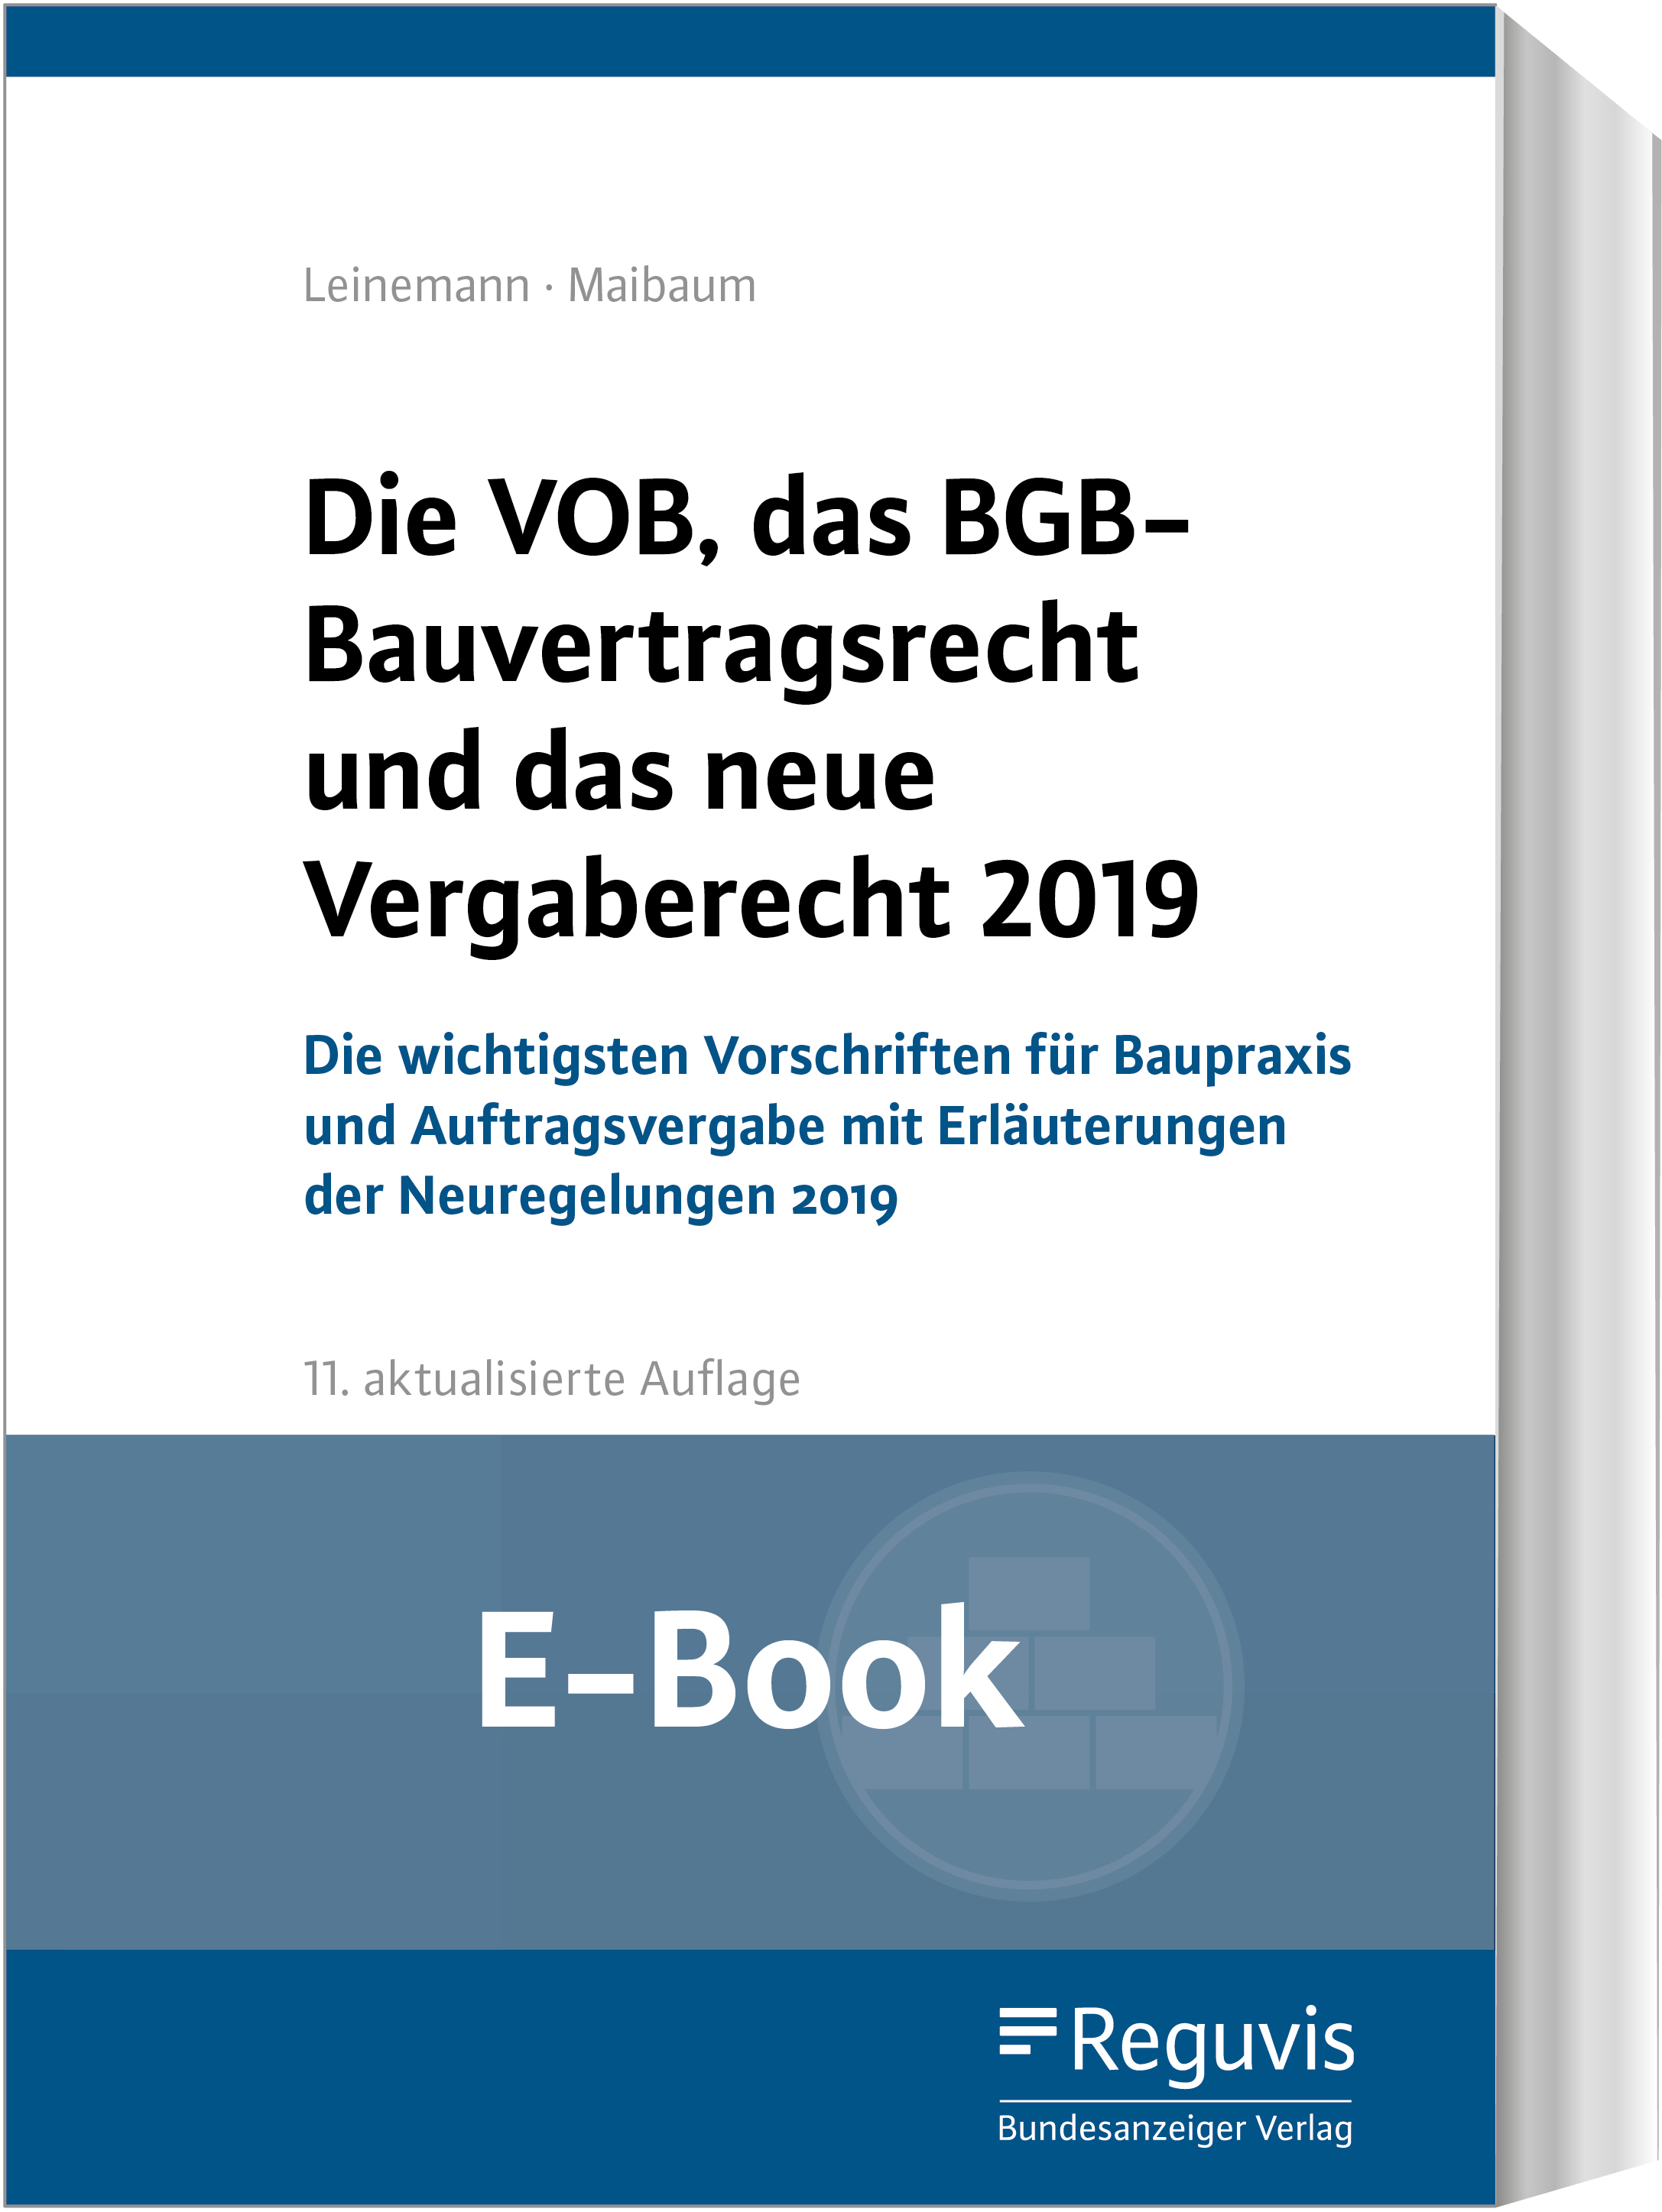 Die VOB, das BGB-Bauvertragsrecht und das neue Vergaberecht 2019 (E-Book)